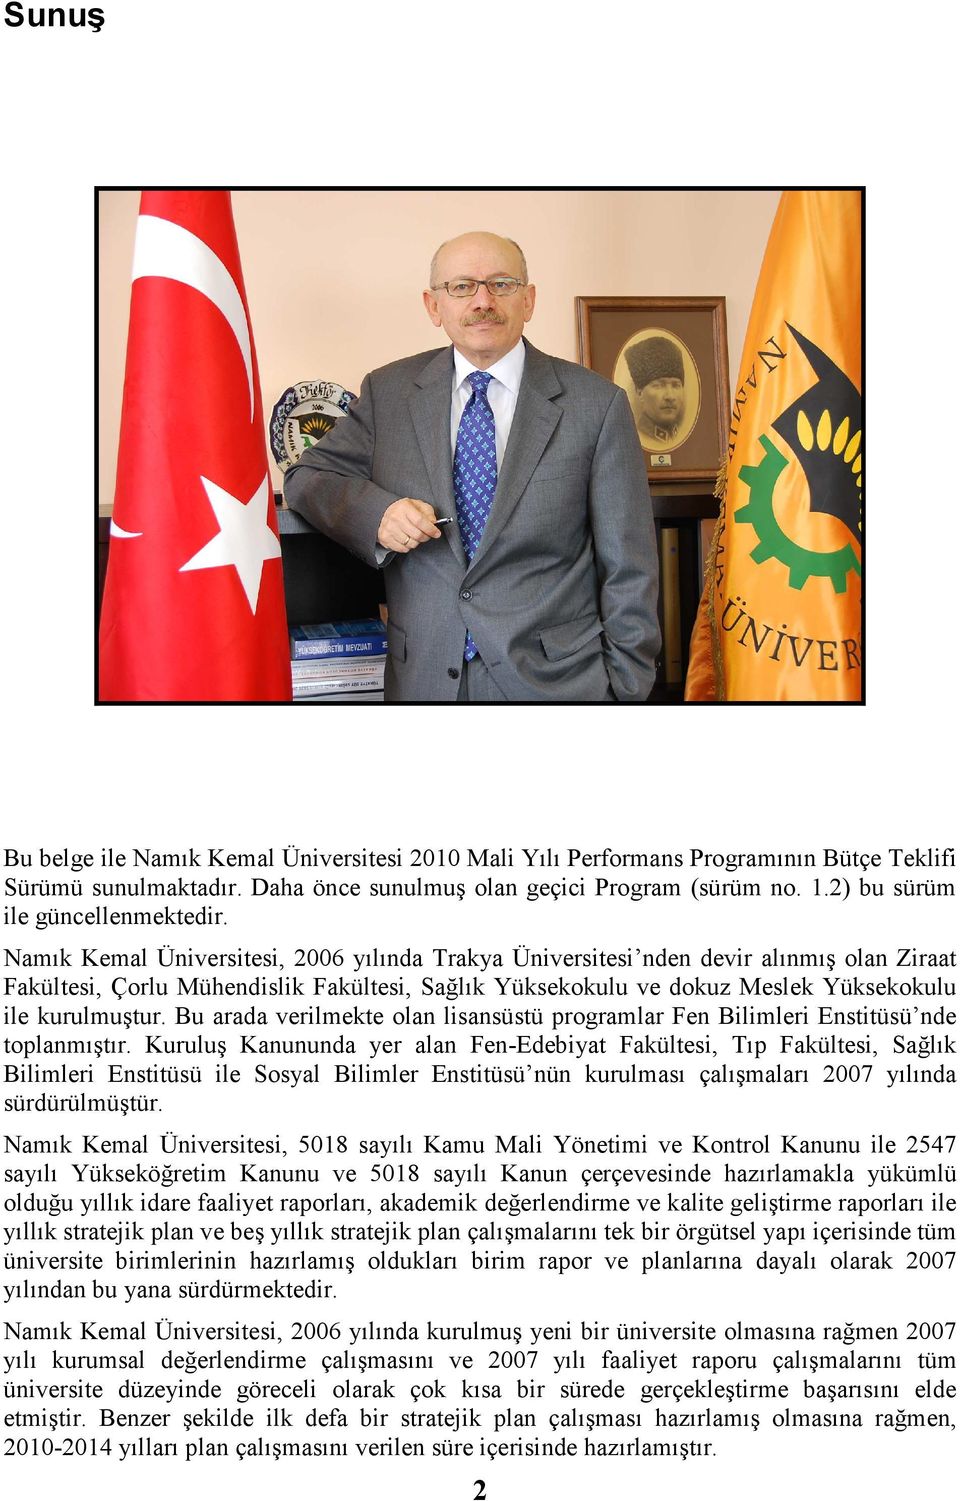 Namık Kemal Üniversitesi, 26 yılında Trakya Üniversitesi nden devir alınmış olan Ziraat Fakültesi, Çorlu Mühendislik Fakültesi, Sağlık Yüksekokulu ve dokuz Meslek Yüksekokulu ile kurulmuştur.